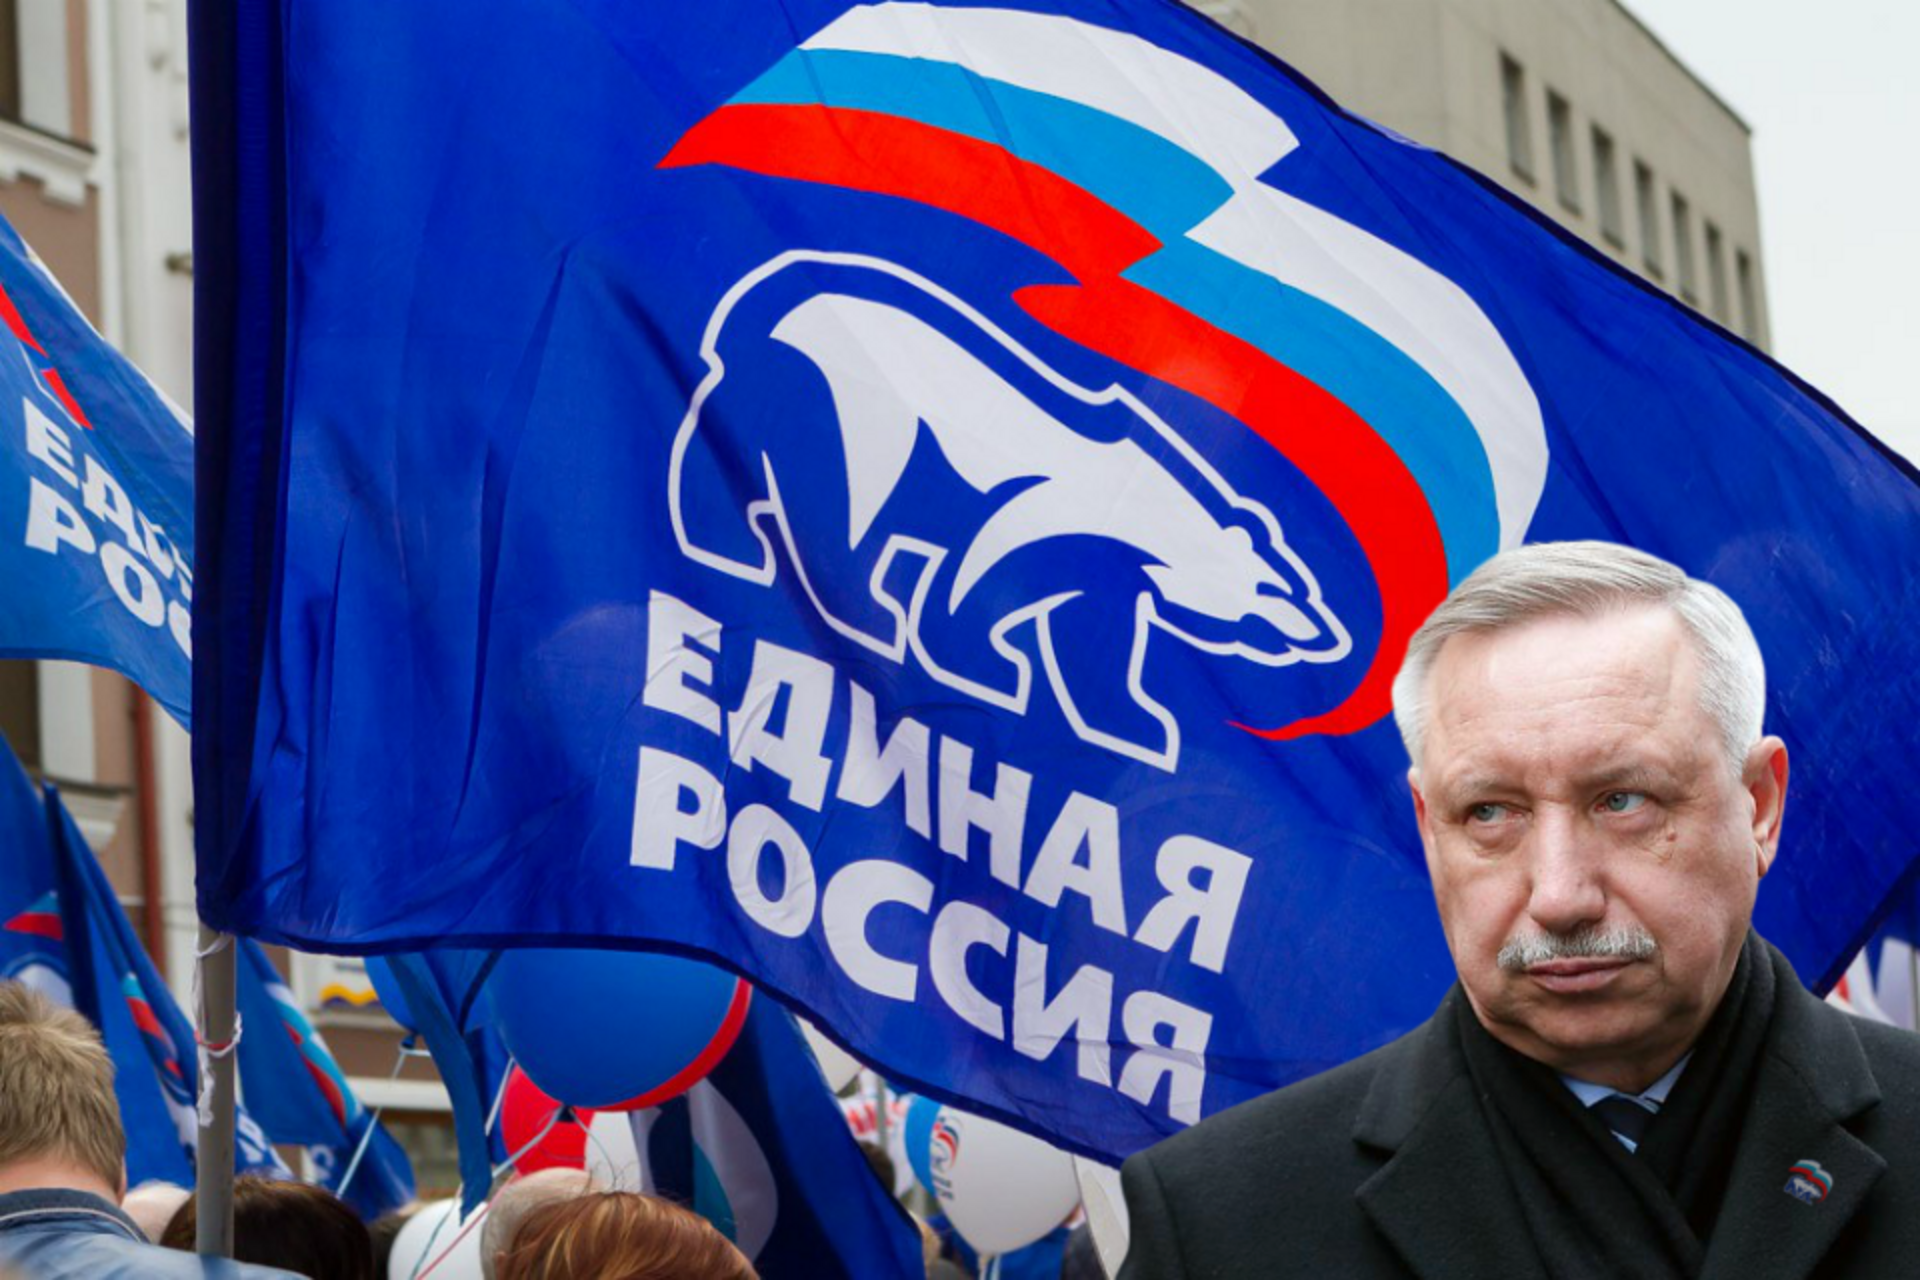 Беспартийная Россия партия. Беглов на фоне флага. Власть Единой массовой партии. Беспартийный флаг.